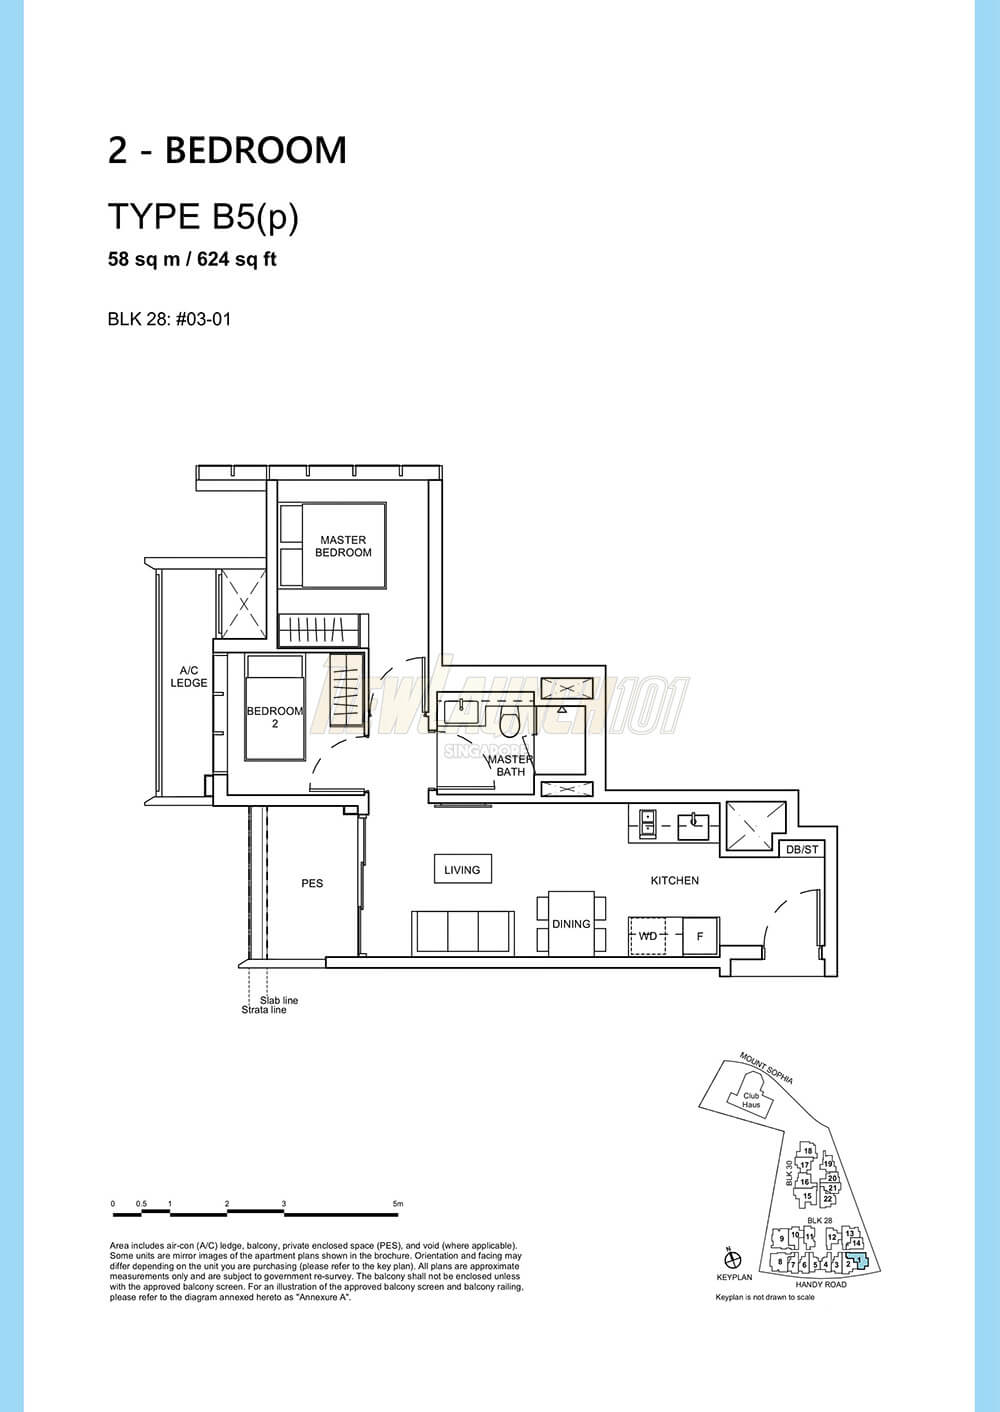 Haus on Handy Floor Plan 2-Bedroom Type B5p